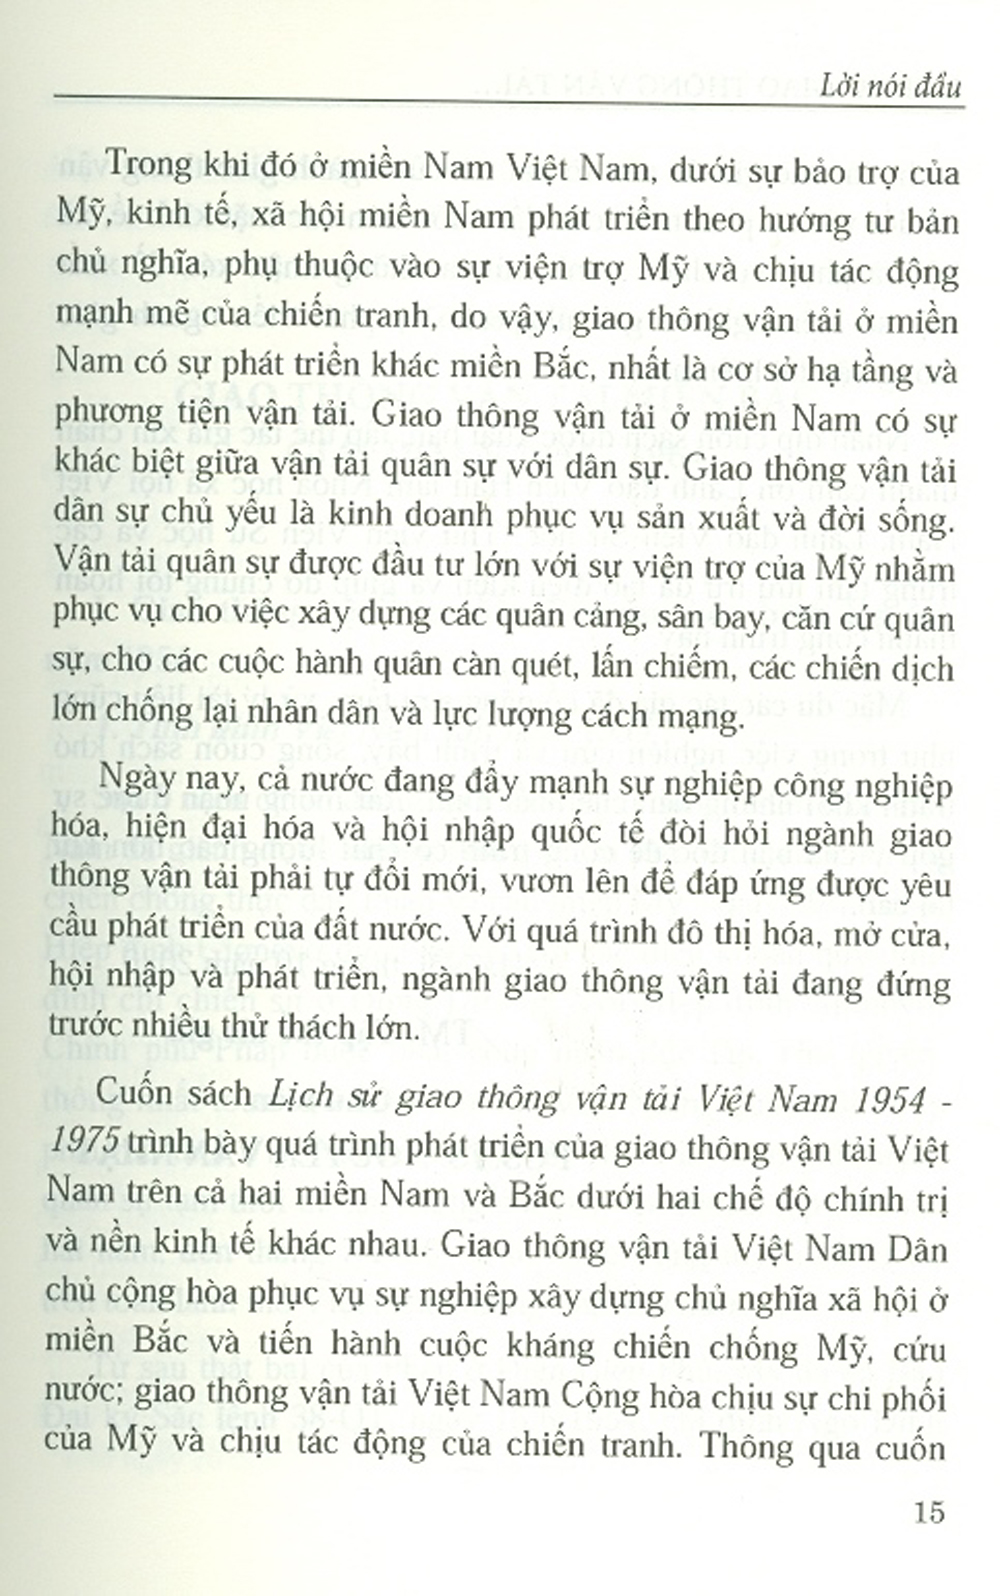 Lịch Sử Giao Thông Vận Tải Việt Nam Từ Năm 1945 Đến Năm 1975 (Sách chuyên khảo)